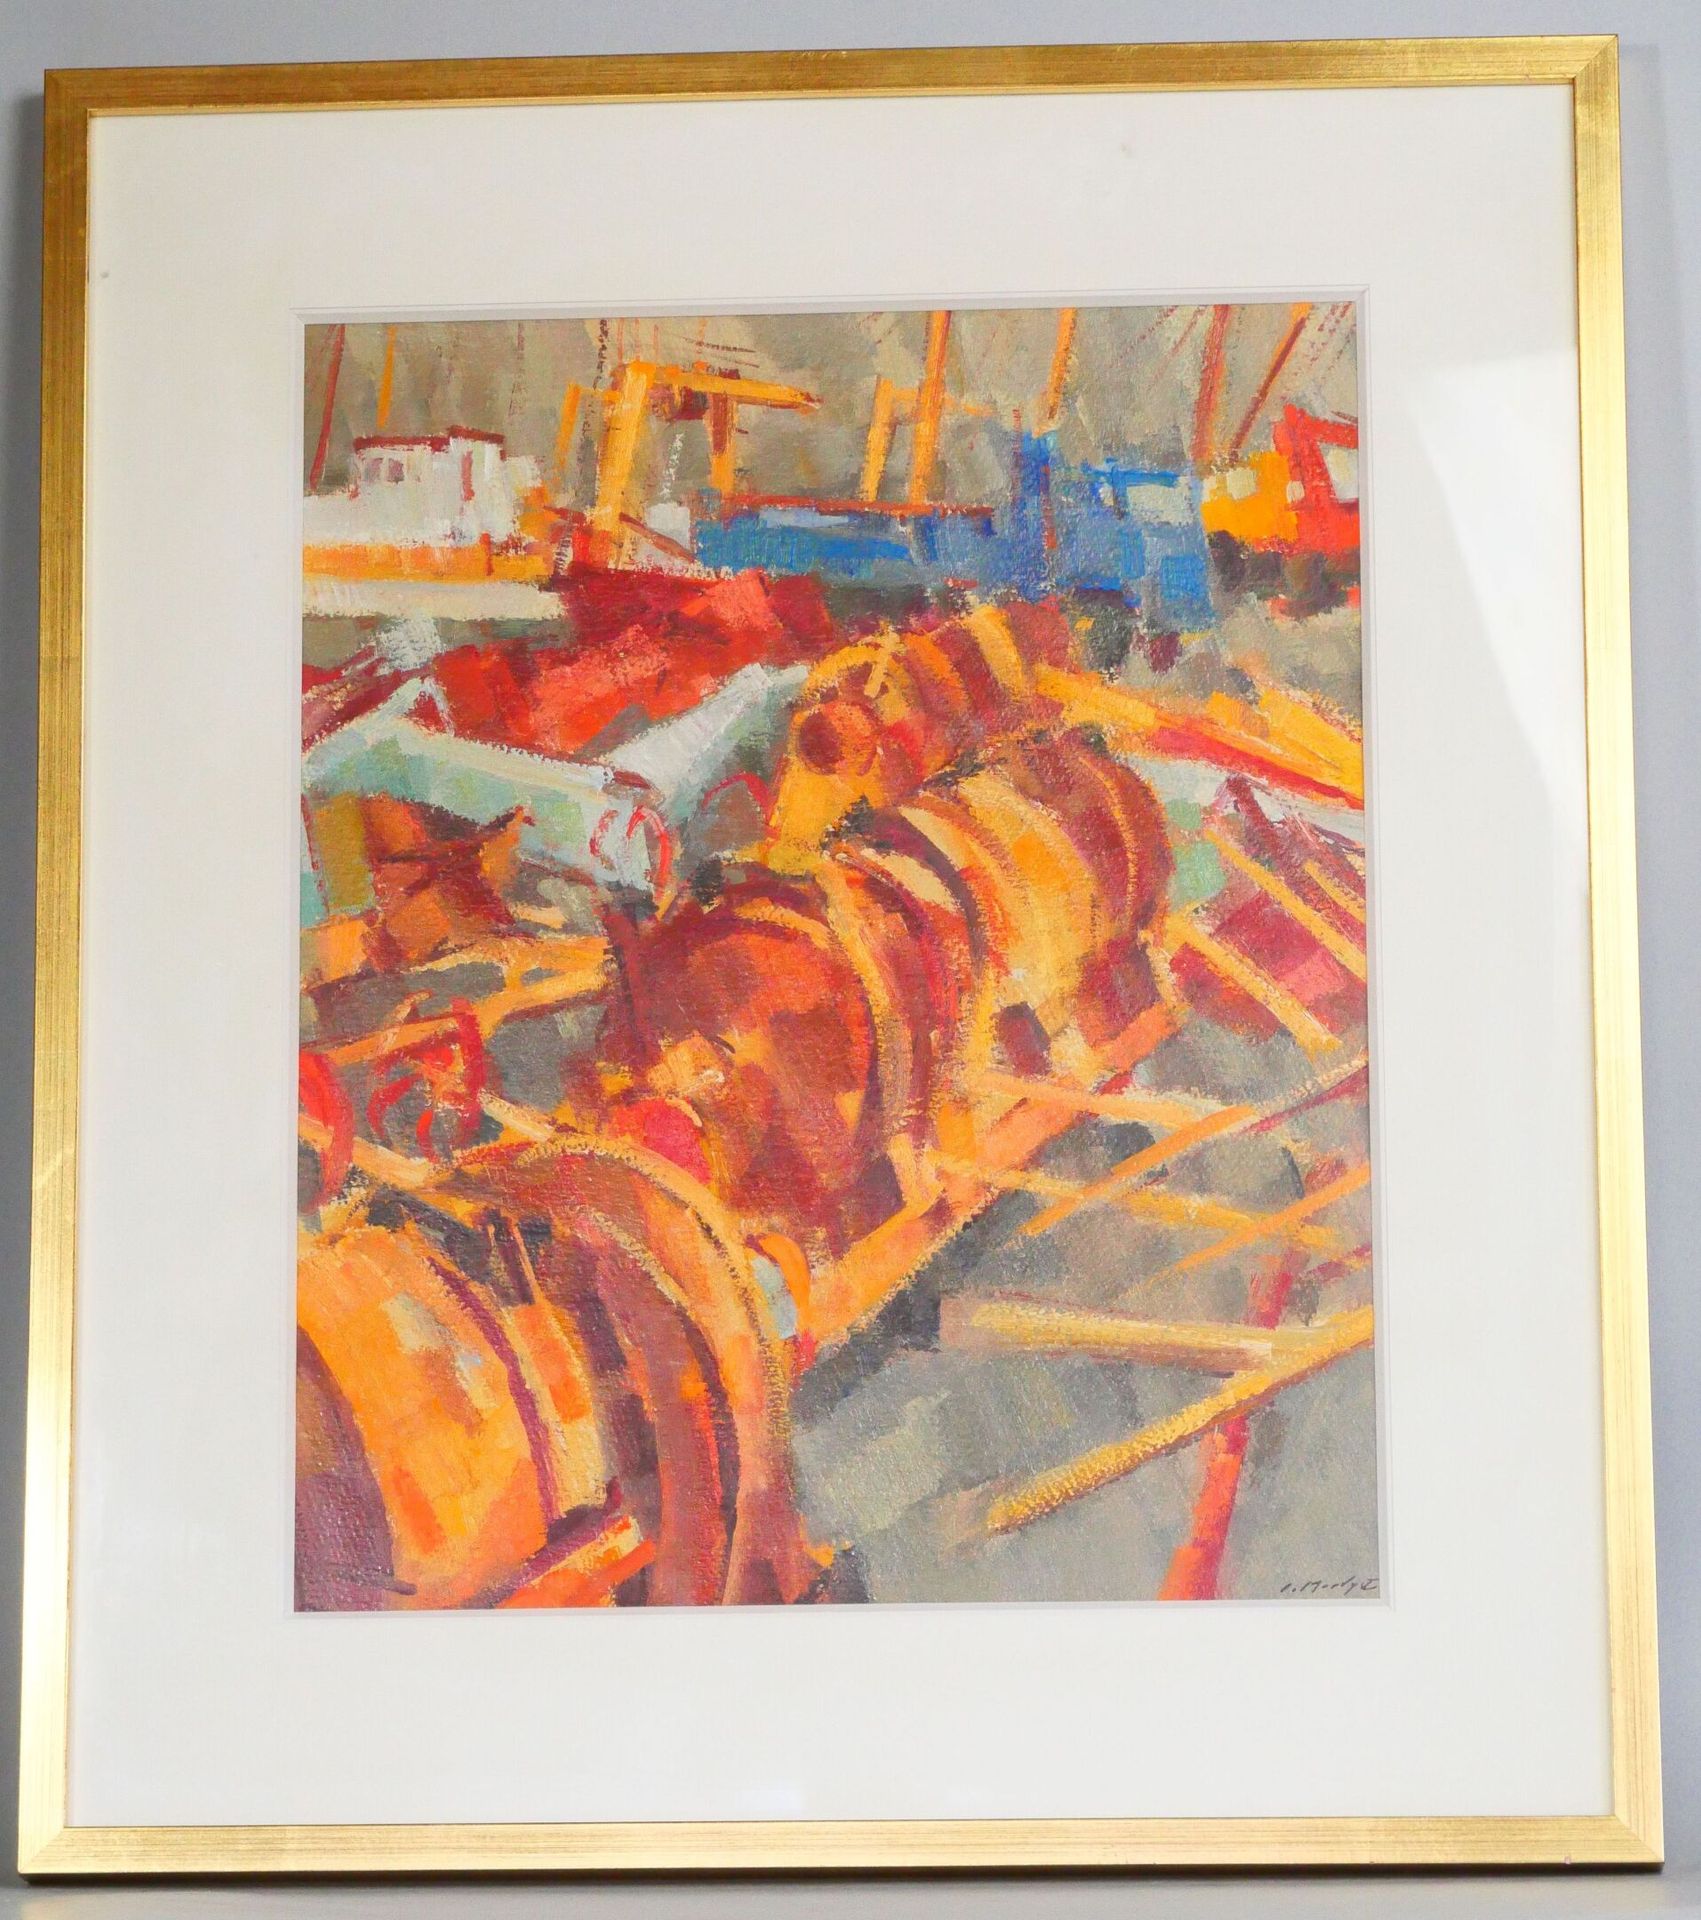 Null 让-勒梅迪(1928-2015)
火车和拖网船 
纸板油画，右下角有签名。 
目测尺寸：46 x 37 cm 
带画框尺寸：65 x 56,5 cm
&hellip;